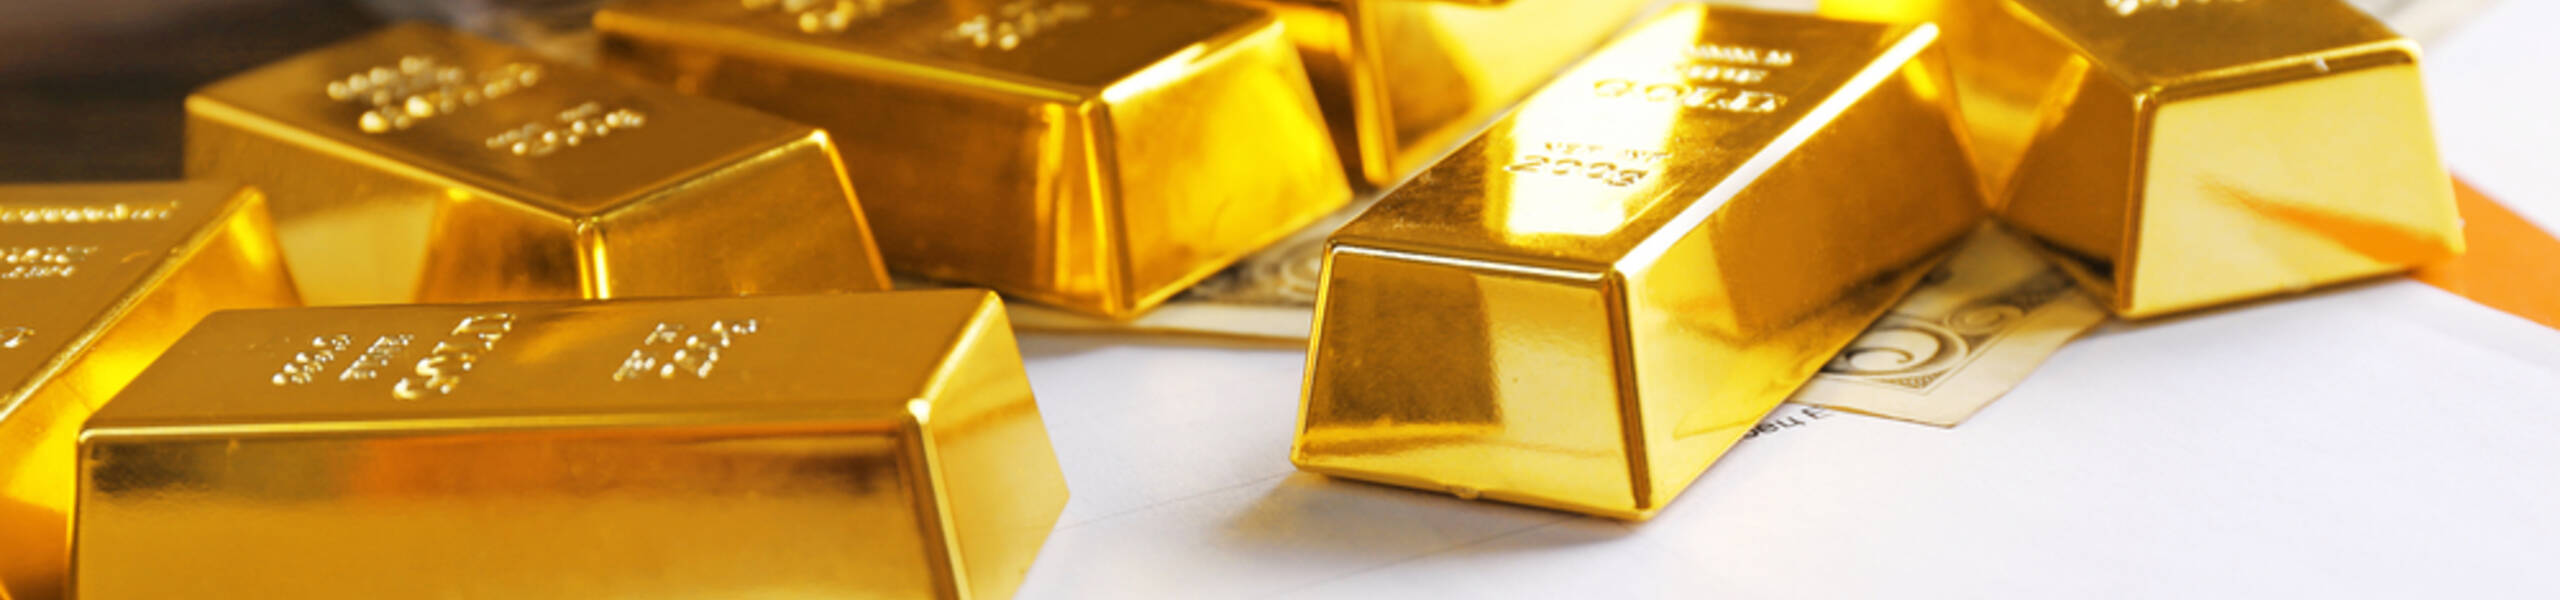 تقرير - لماذا نتوقع أن يرتفع الذهب إلى 2000 دولار بل و3000 دولار للأونصة؟